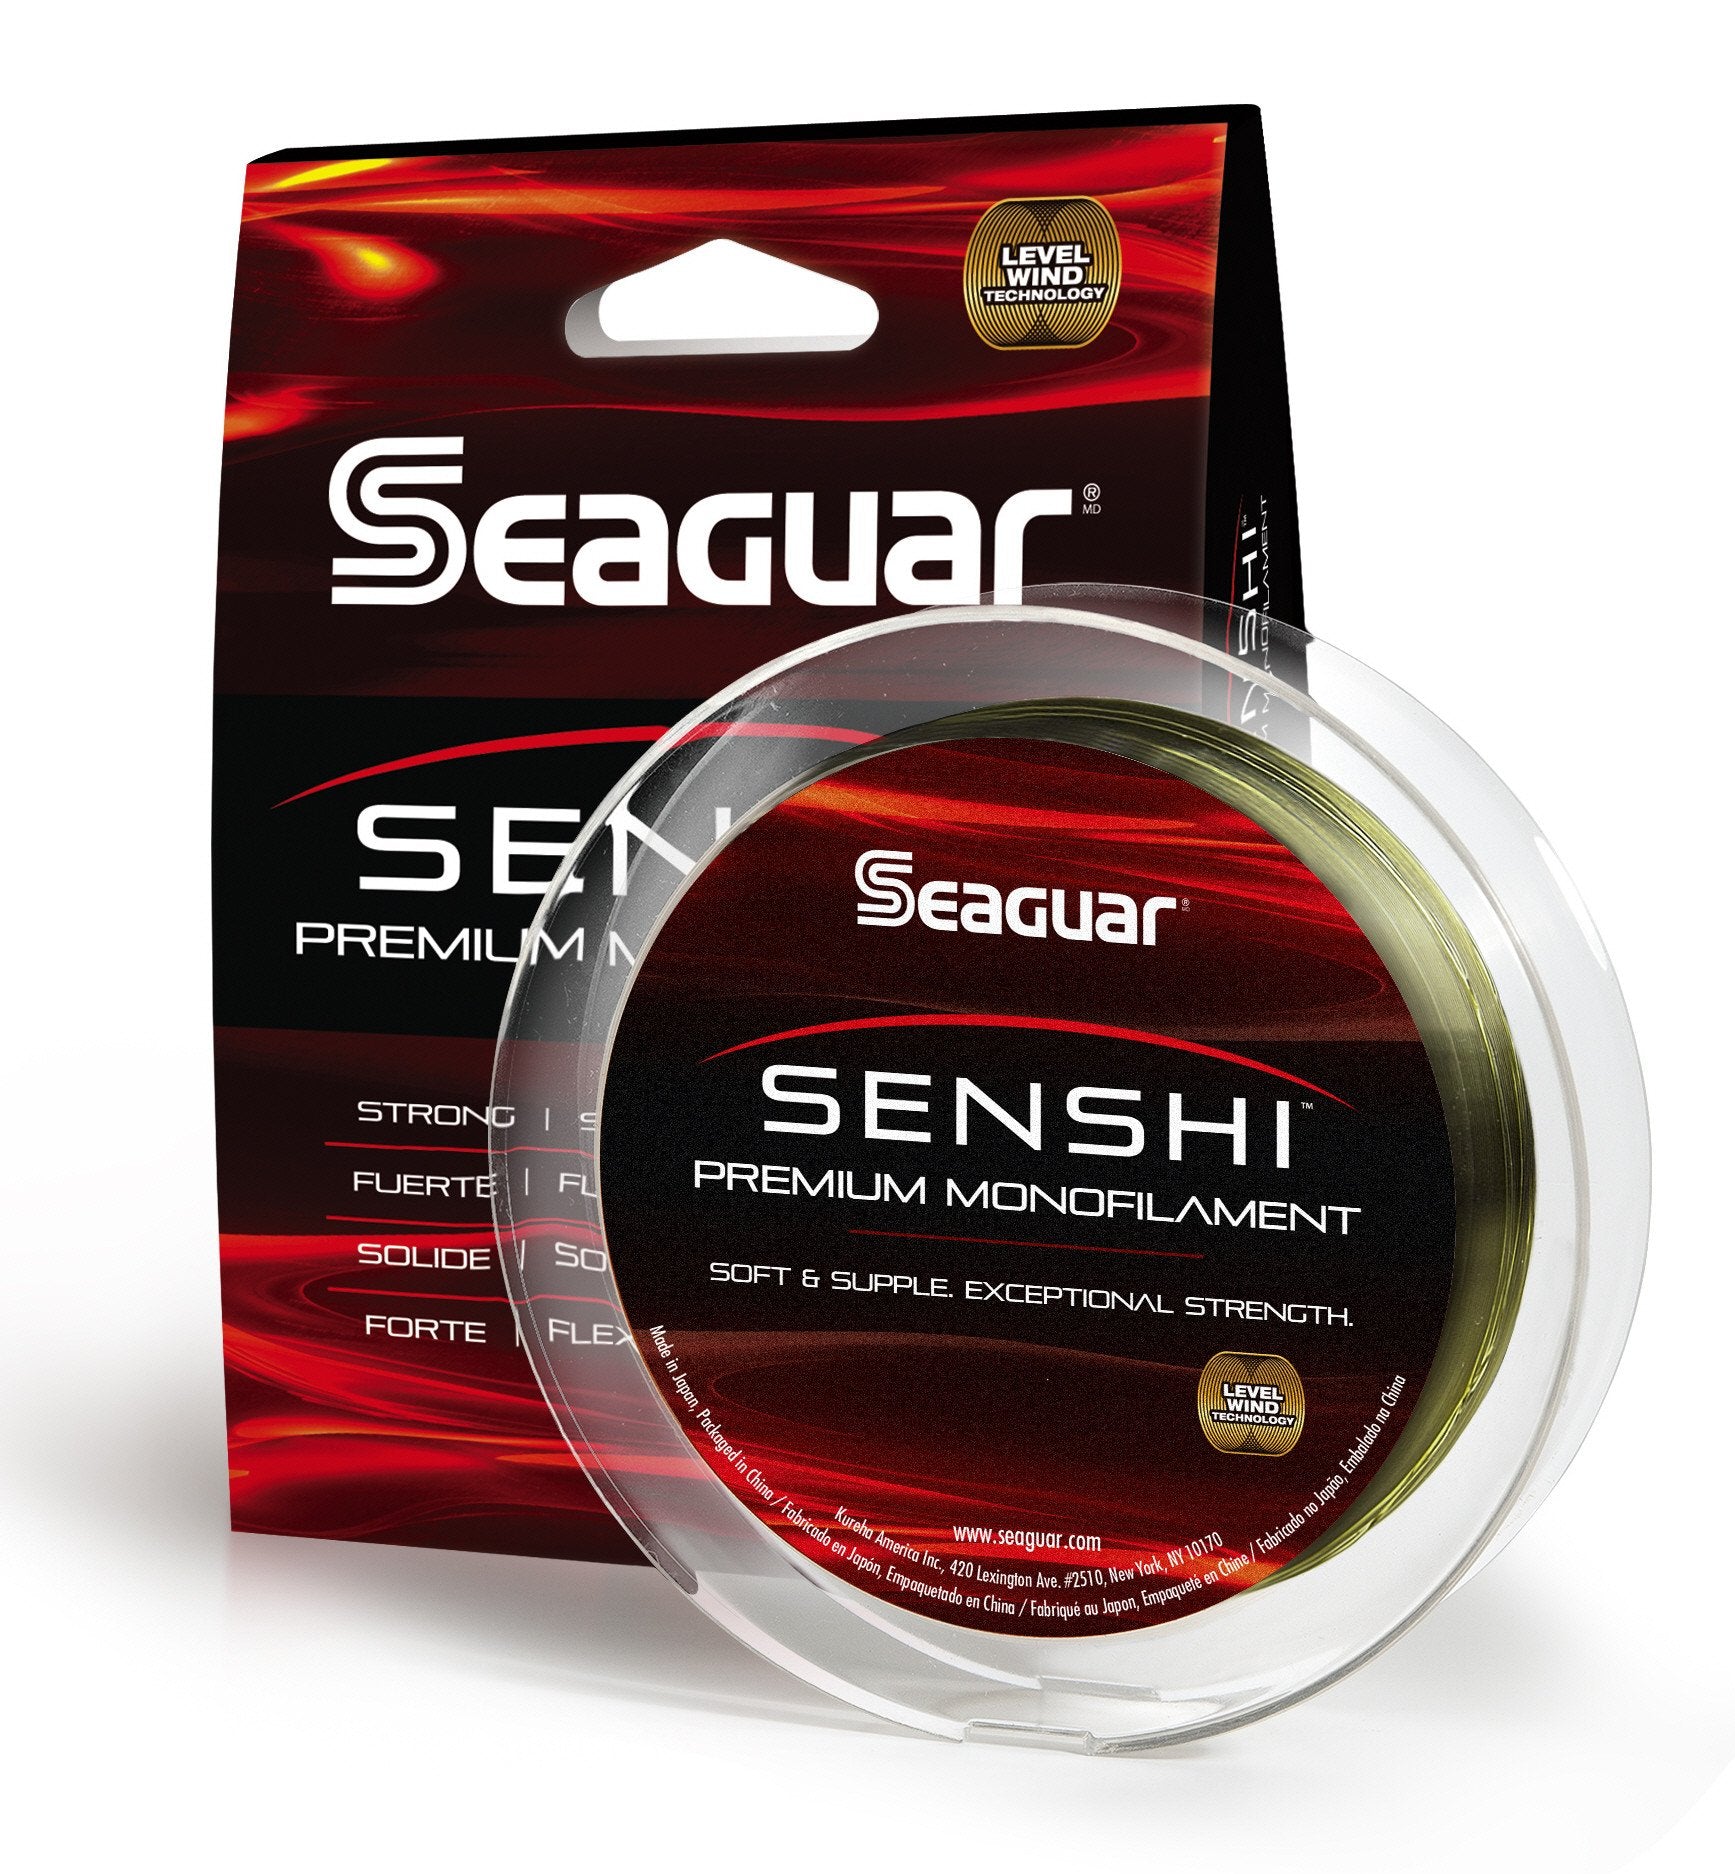 Seaguar Senshi Nylon Monofilament Fishing Line